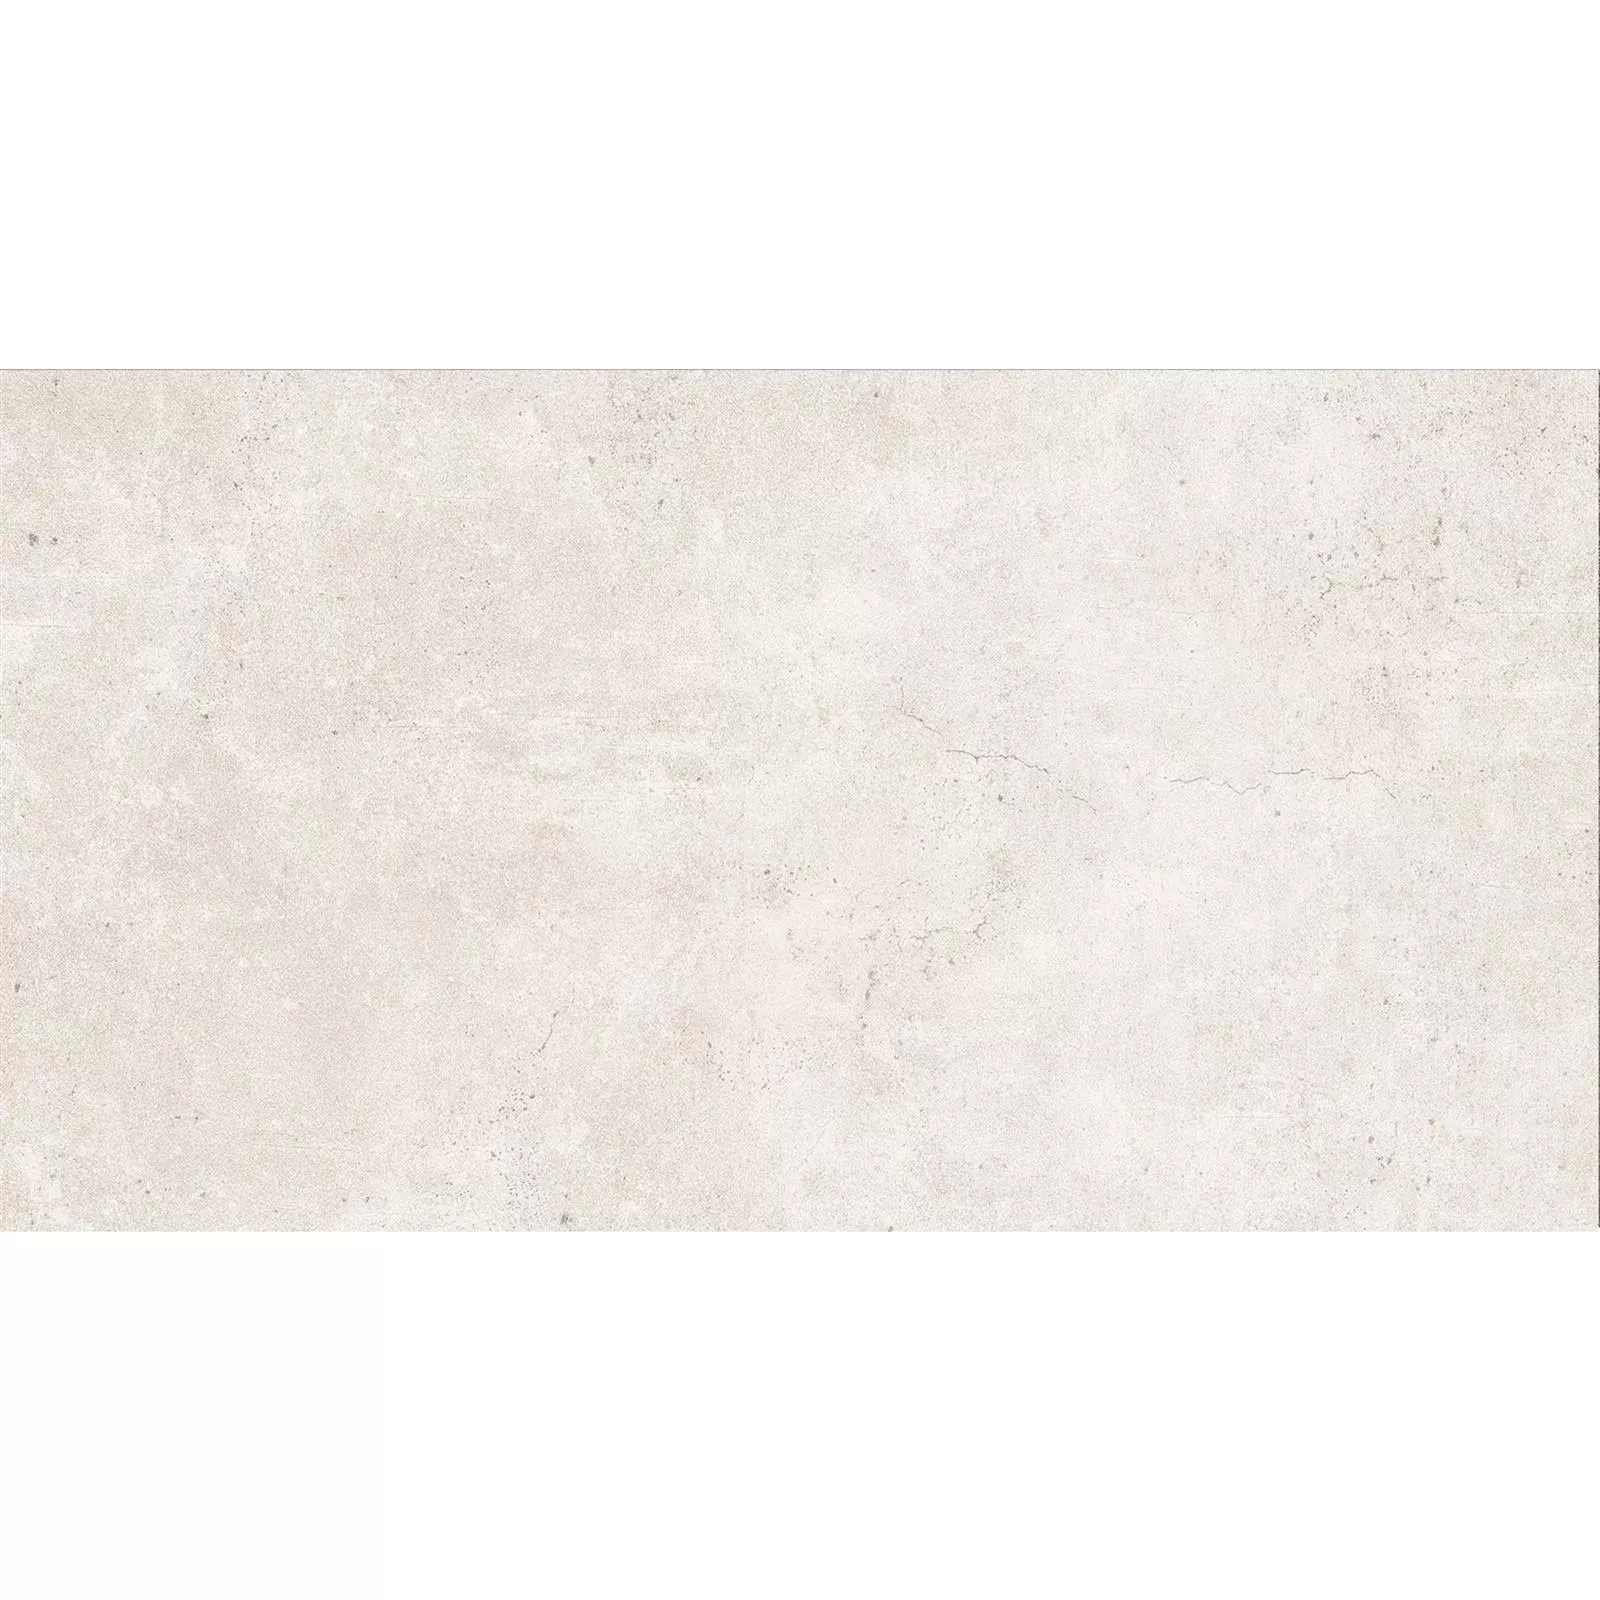 Πρότυπο Πλακάκια Δαπέδου Jamaica Συγκεκριμένη Εμφάνιση Kρέμα Ασπρο 30x60cm